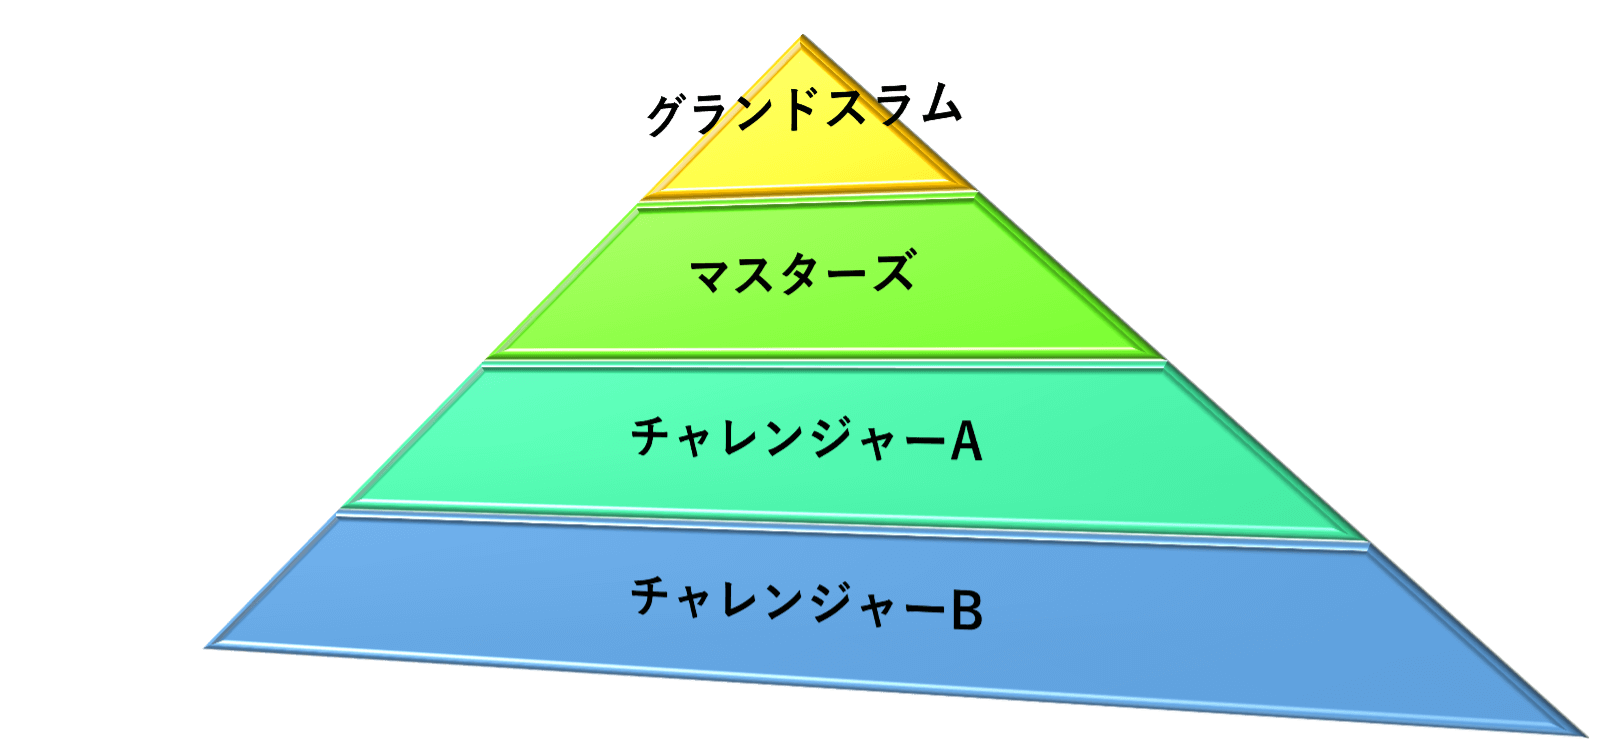 サトウGTCジュニアアカデミーの4つのピラミッド